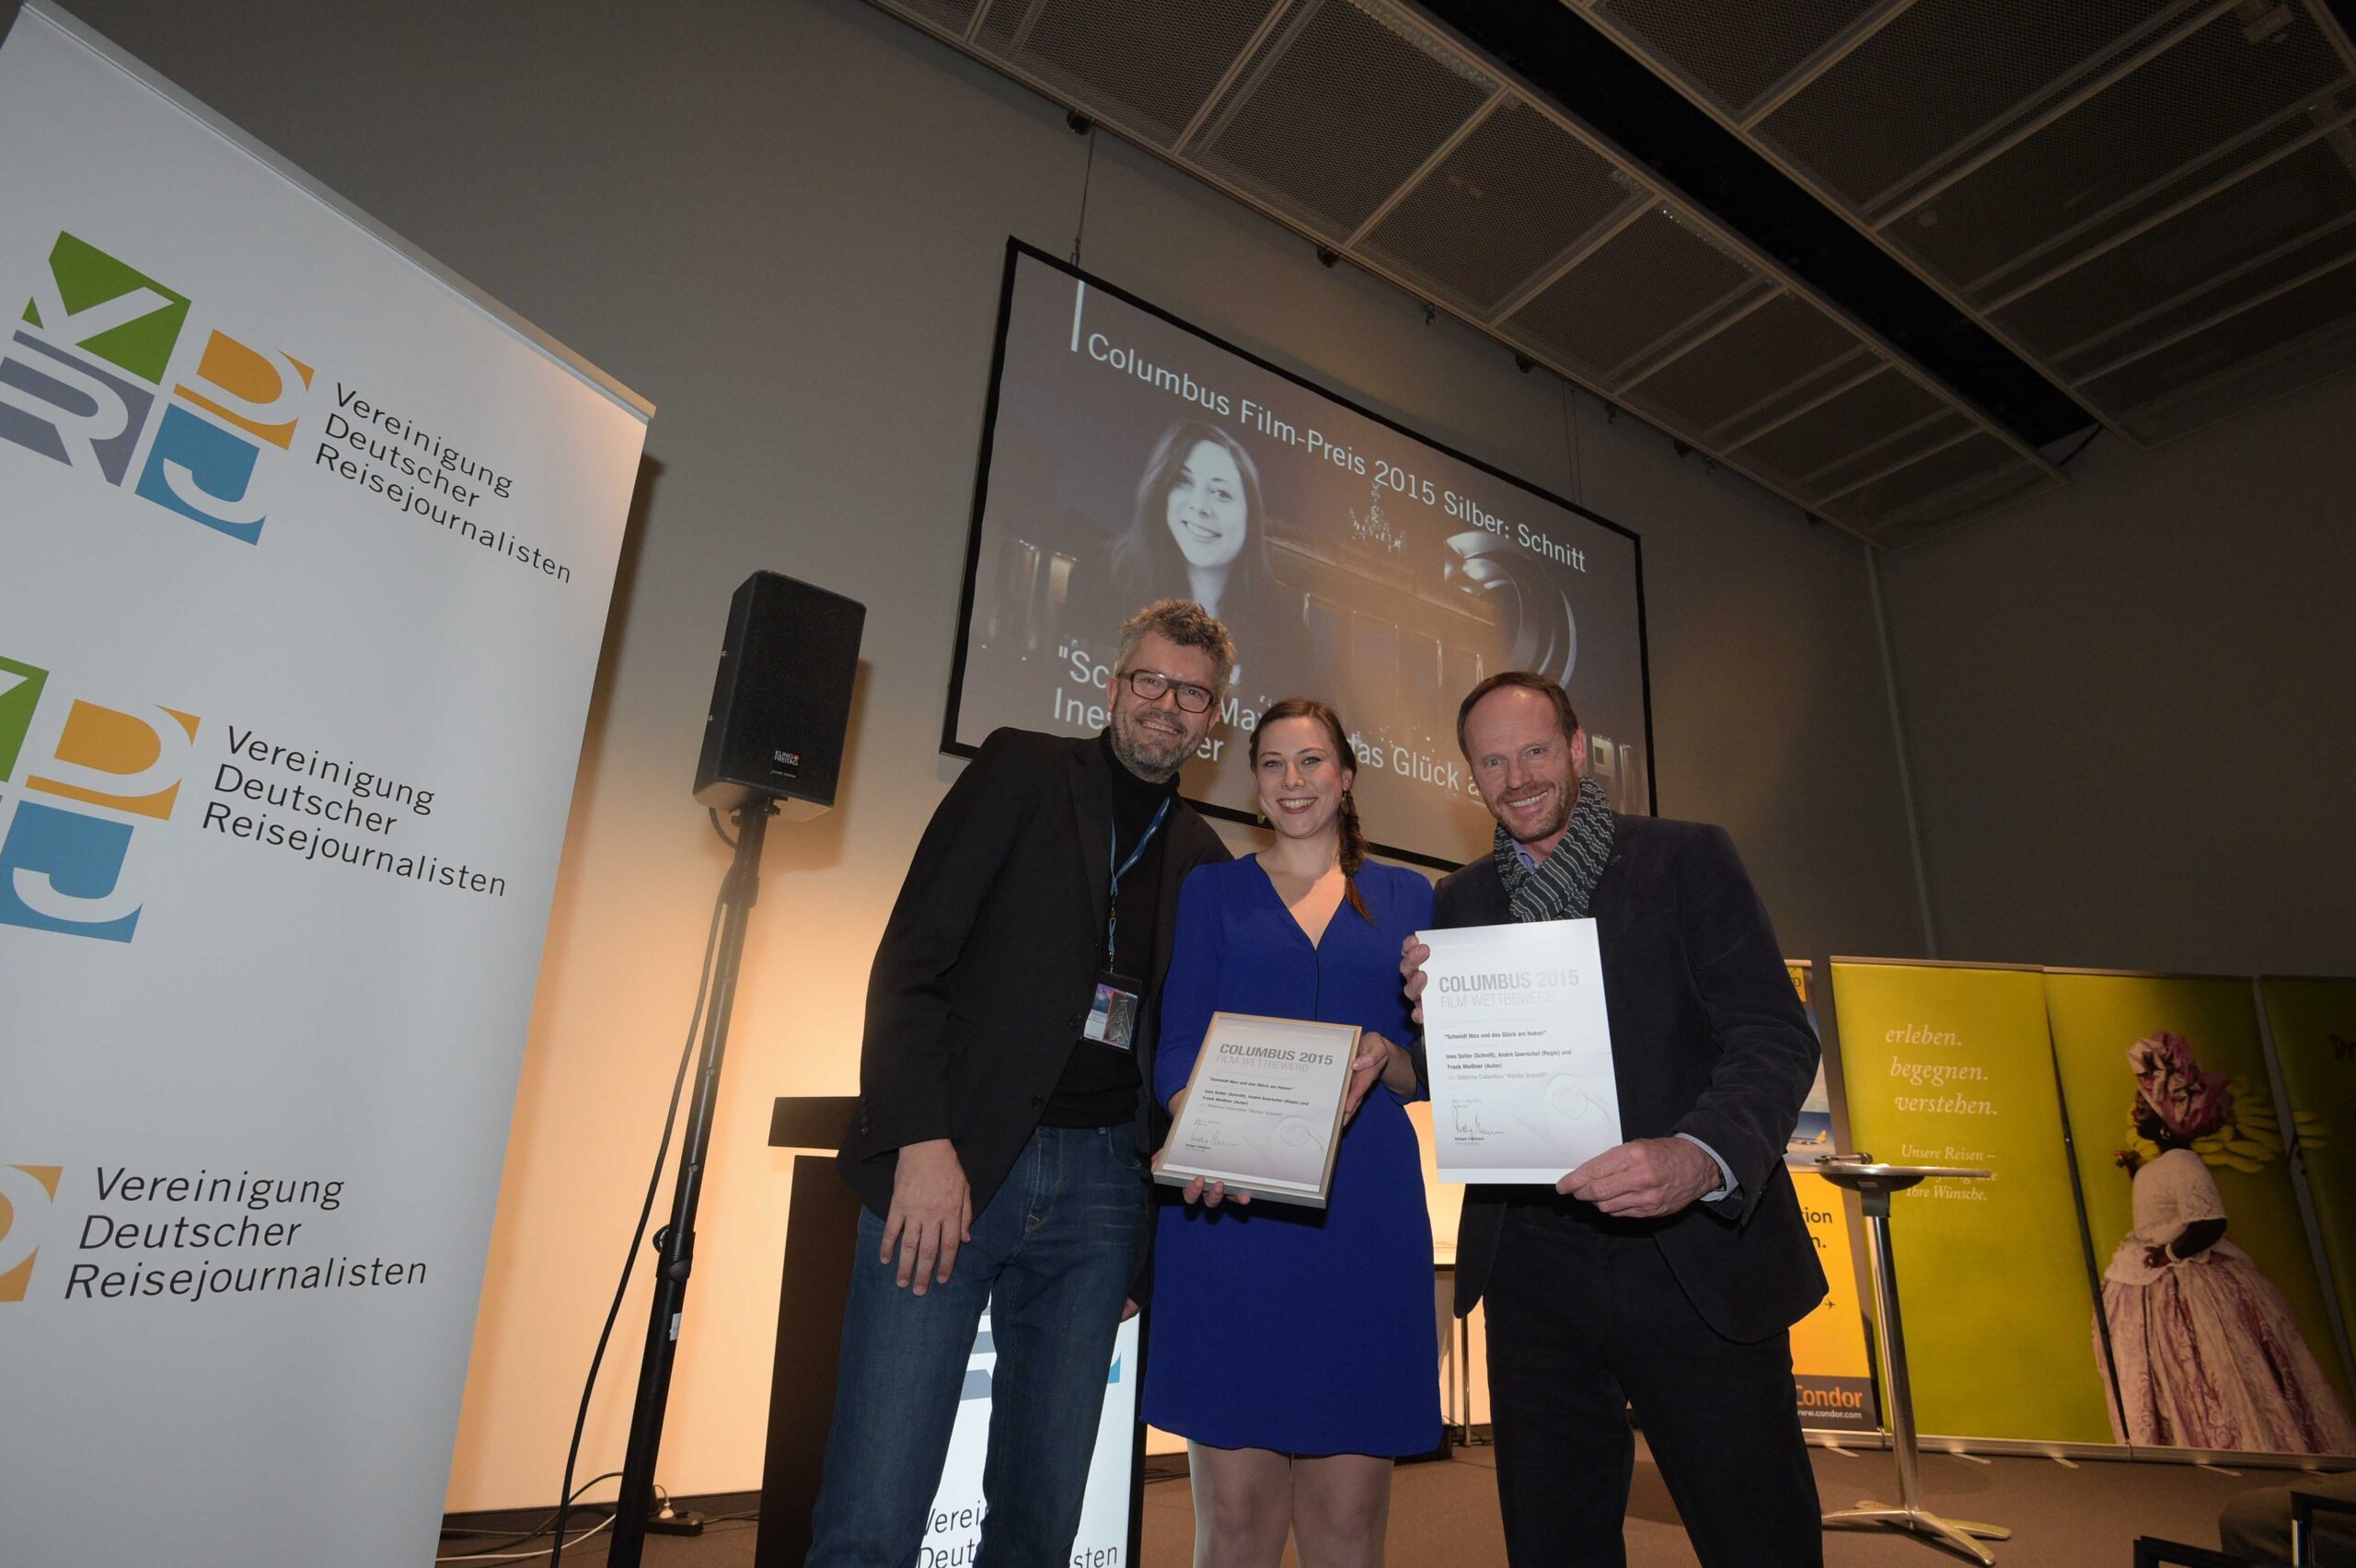 Columbus Film Preisverleihung 2015 Silber Ines Seiter und Frank Meißner mit Thomas Radler web